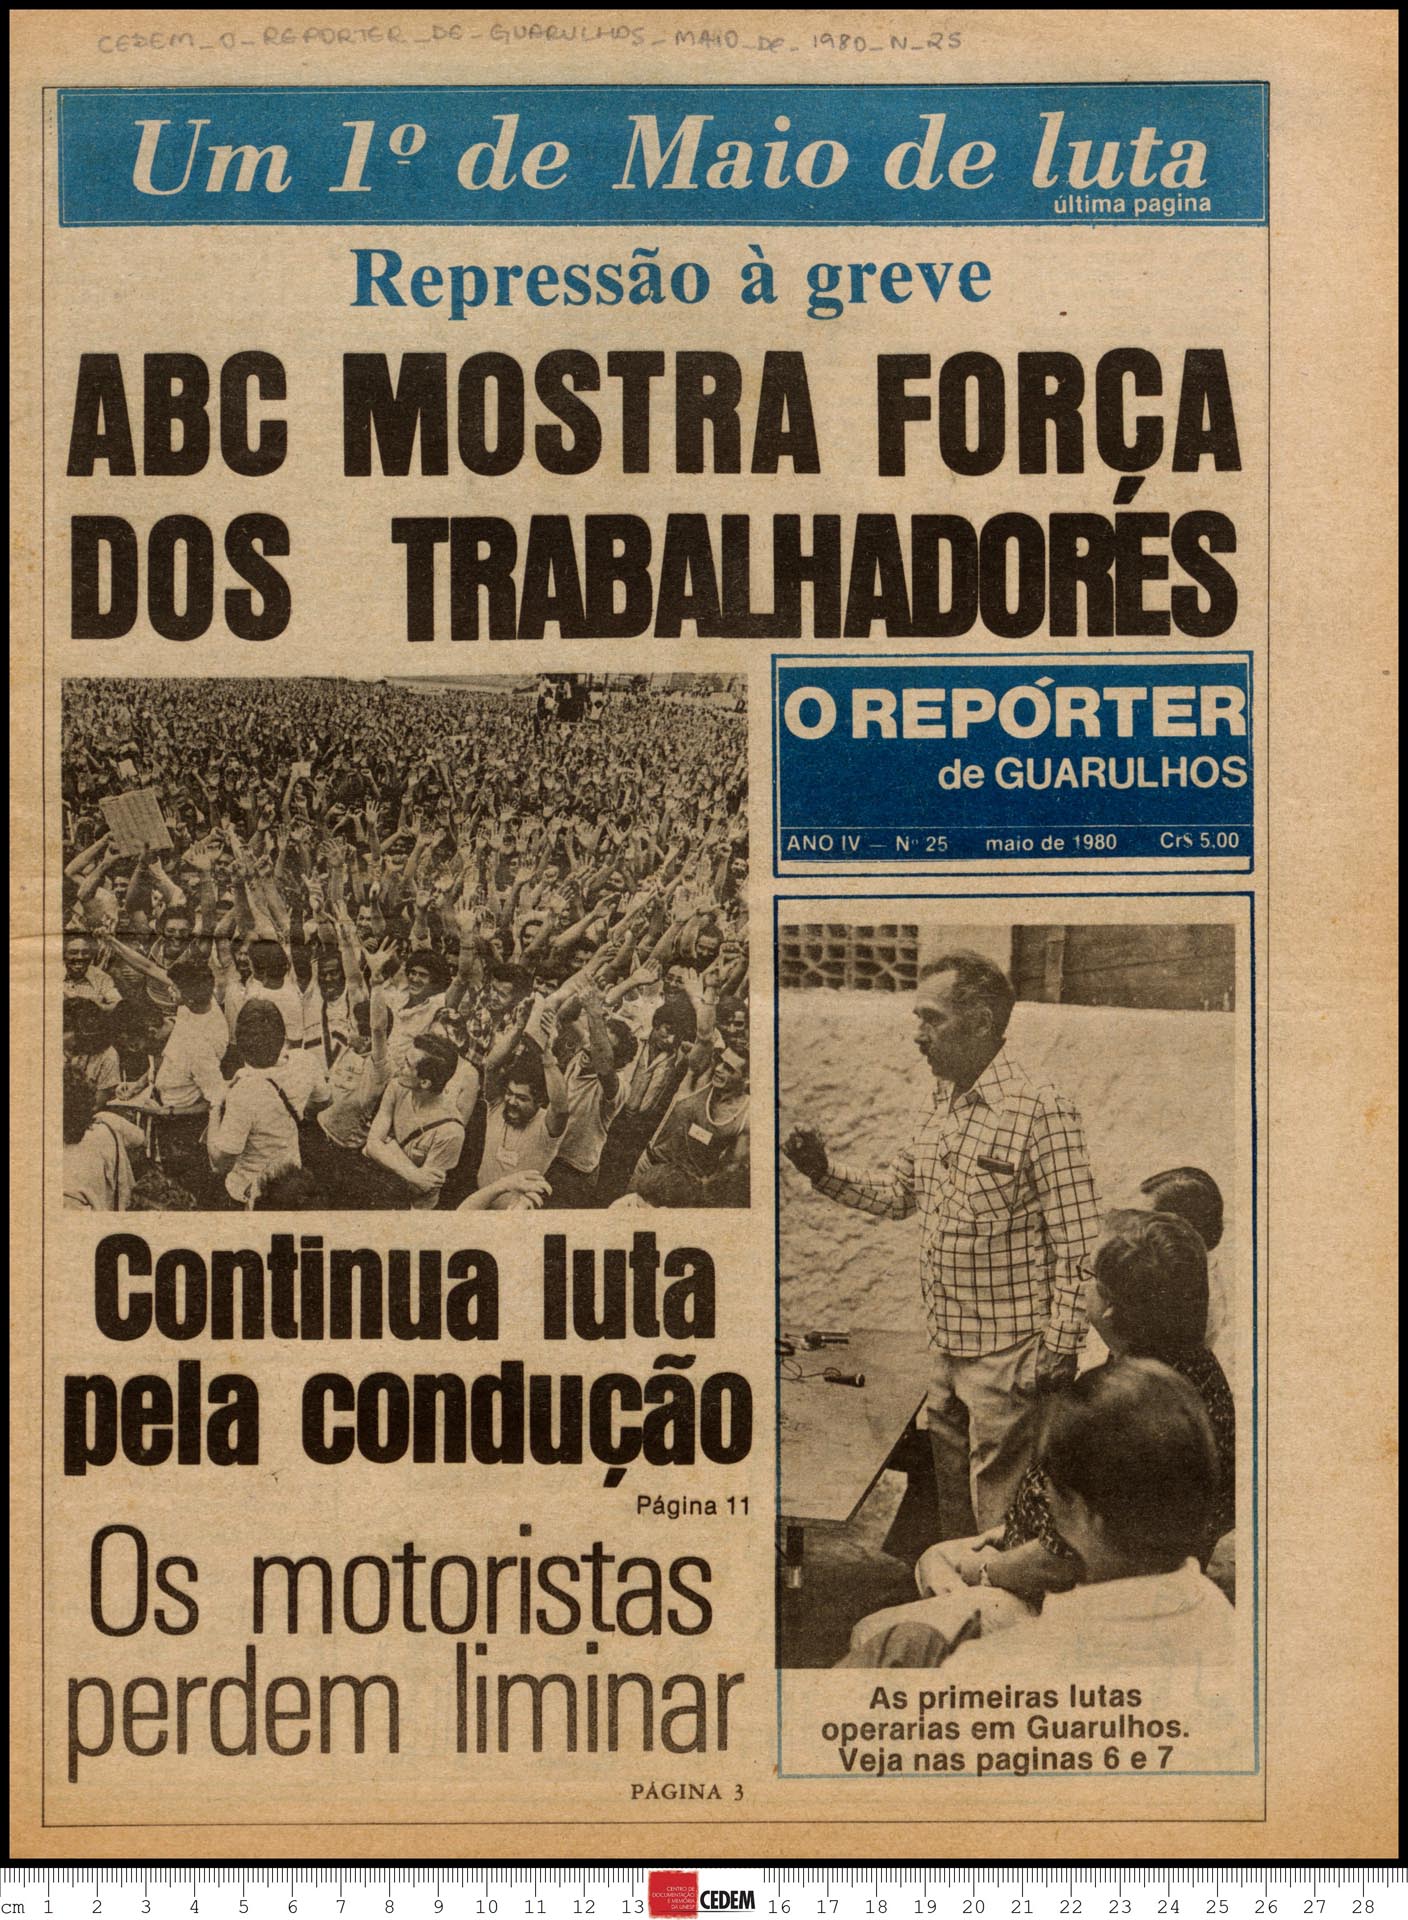 O reportér de Guarulhos - 25 - mai. 1980